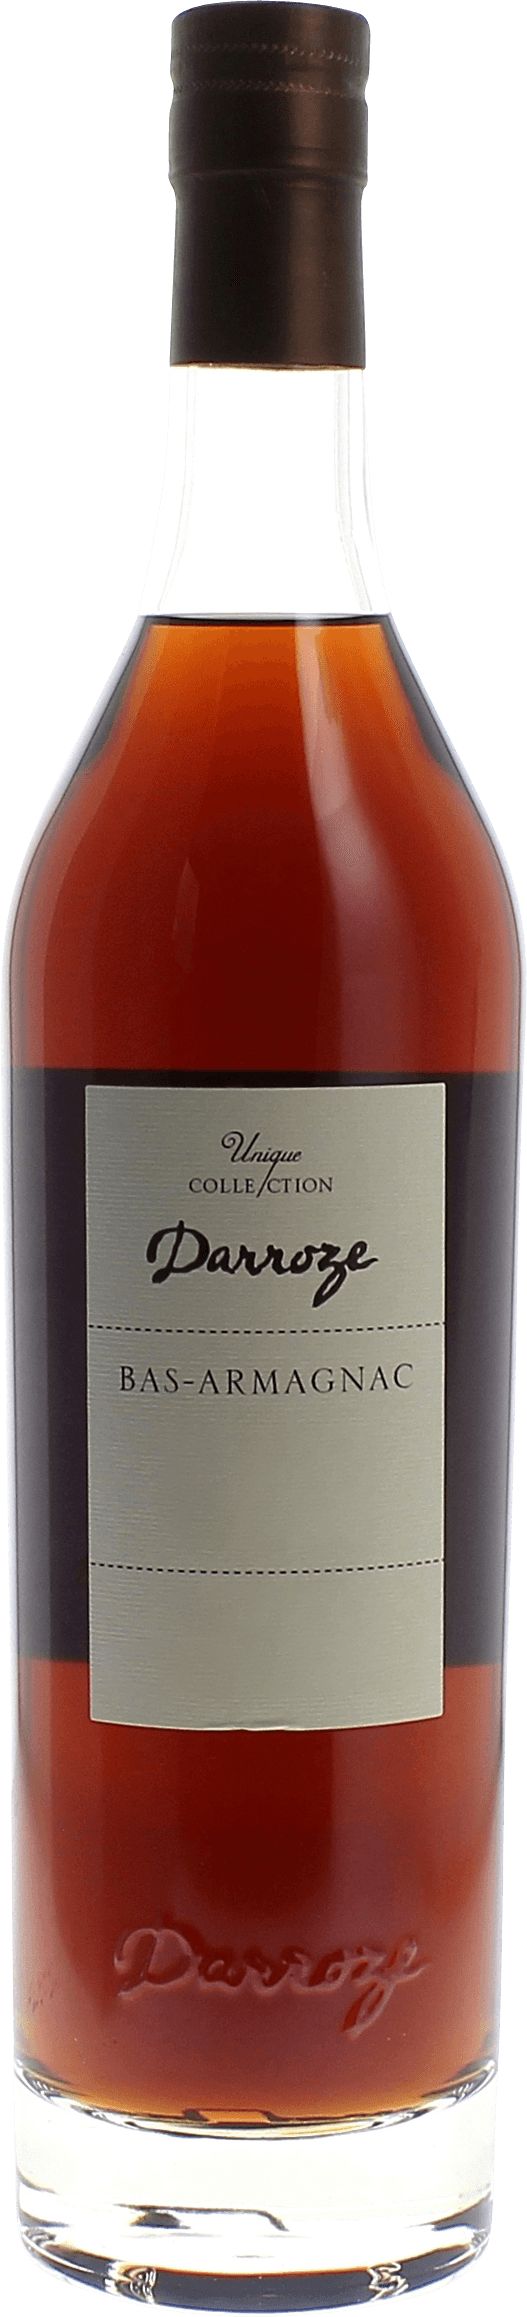 Domaine de tillet 40 1975  Bas Armagnac, DARROZE  Francis Bas Armagnac